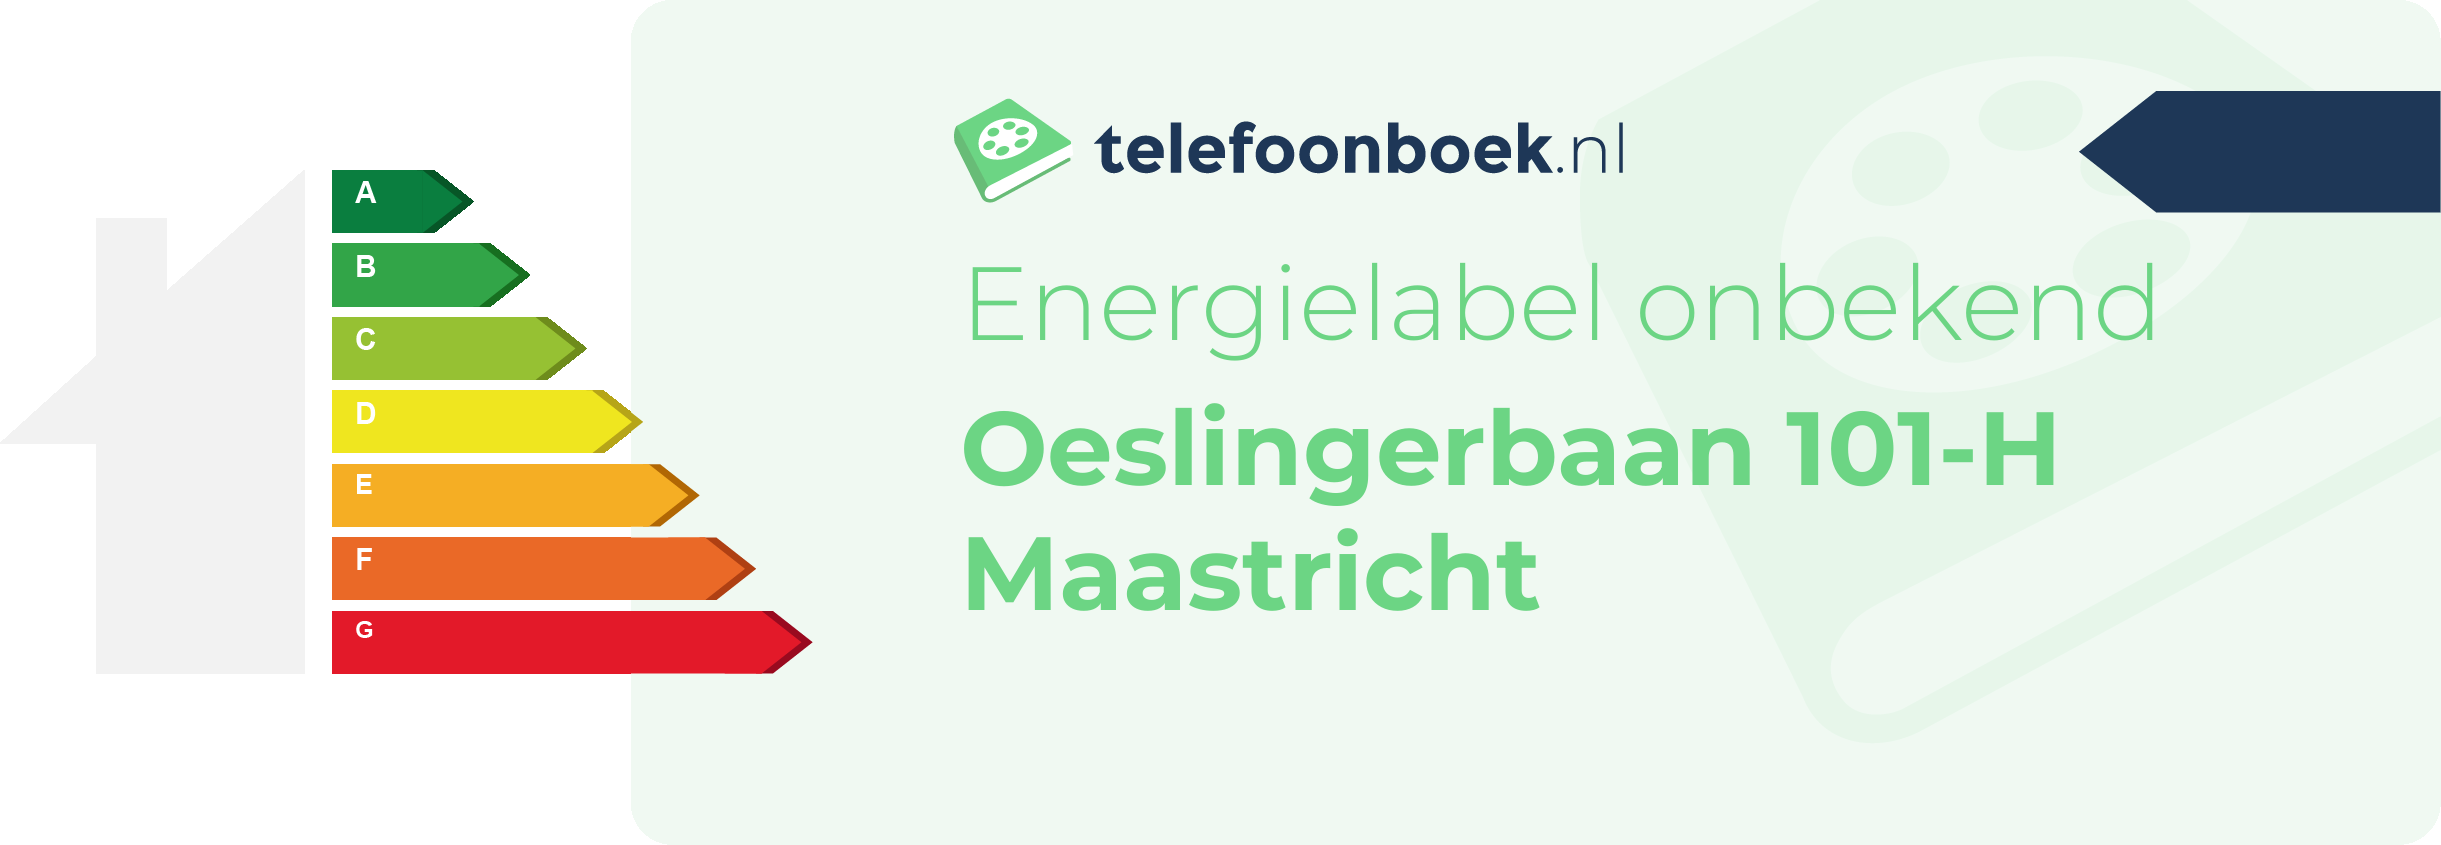 Energielabel Oeslingerbaan 101-H Maastricht